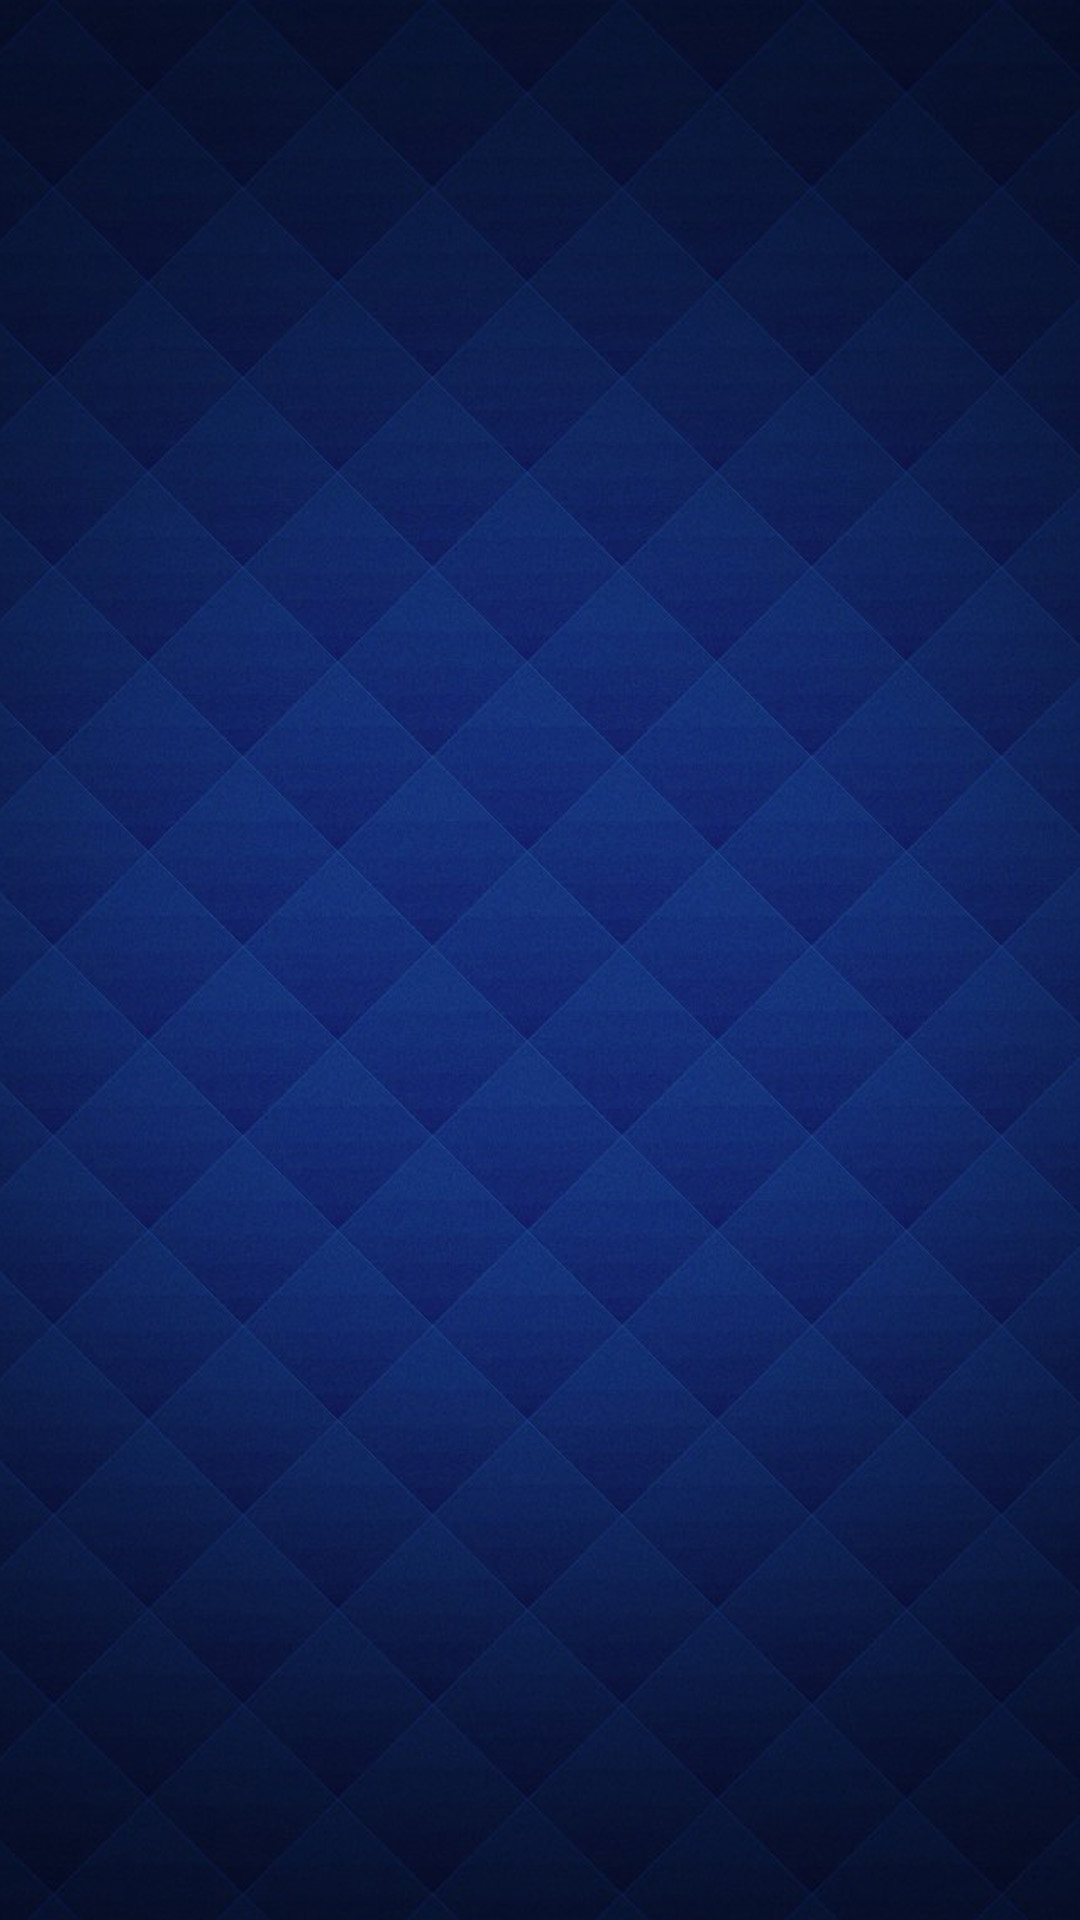 Dark Blue Checkered Background Blue plaid texture nexus